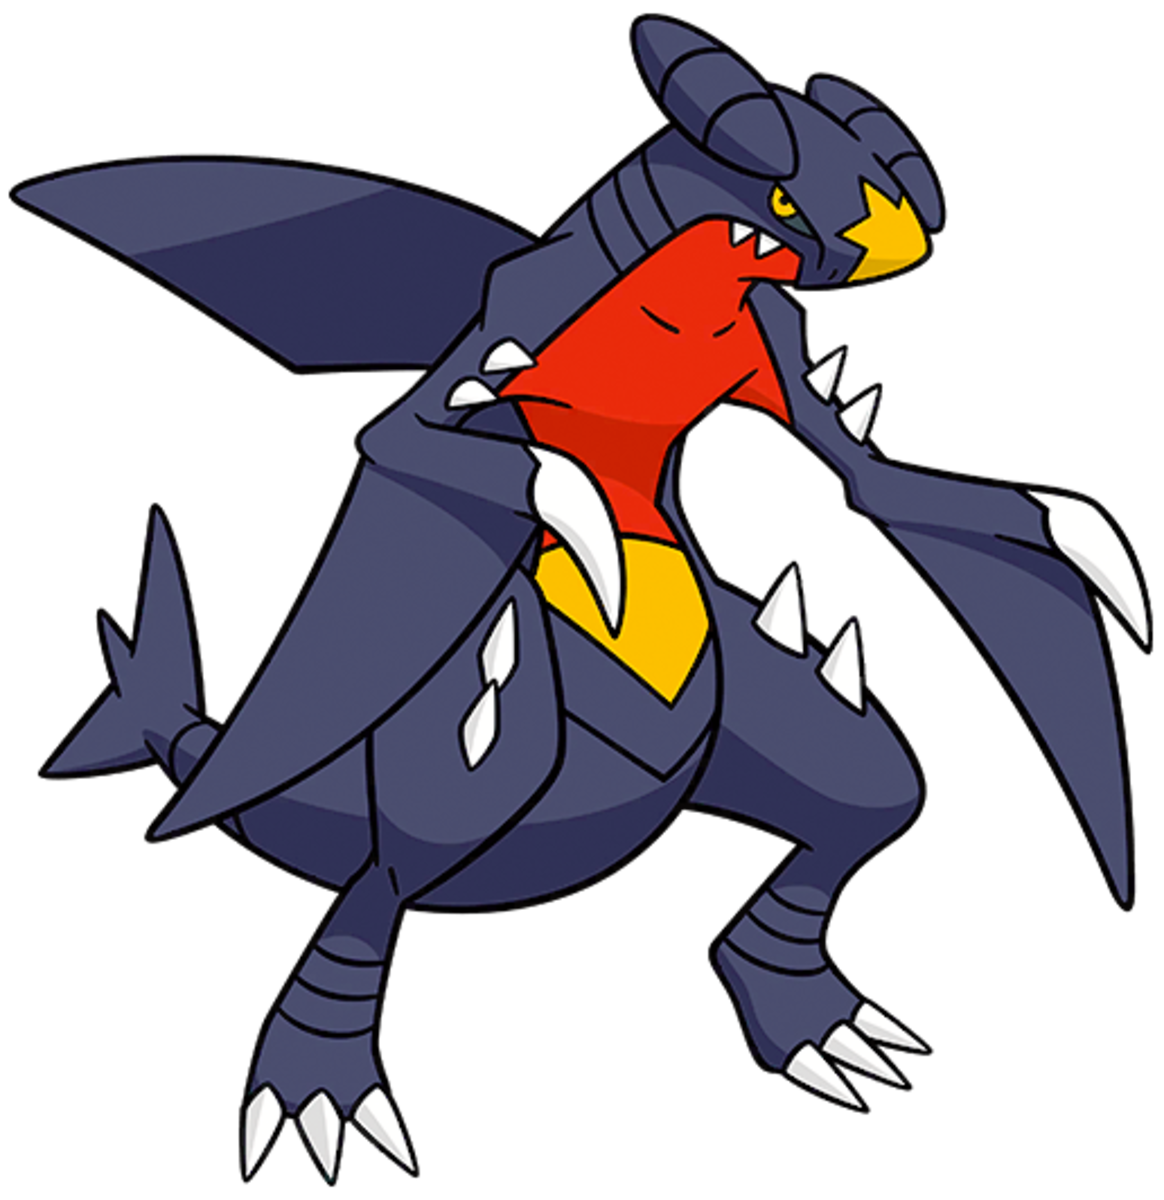 Garchomp, the "Mach" Pokémon